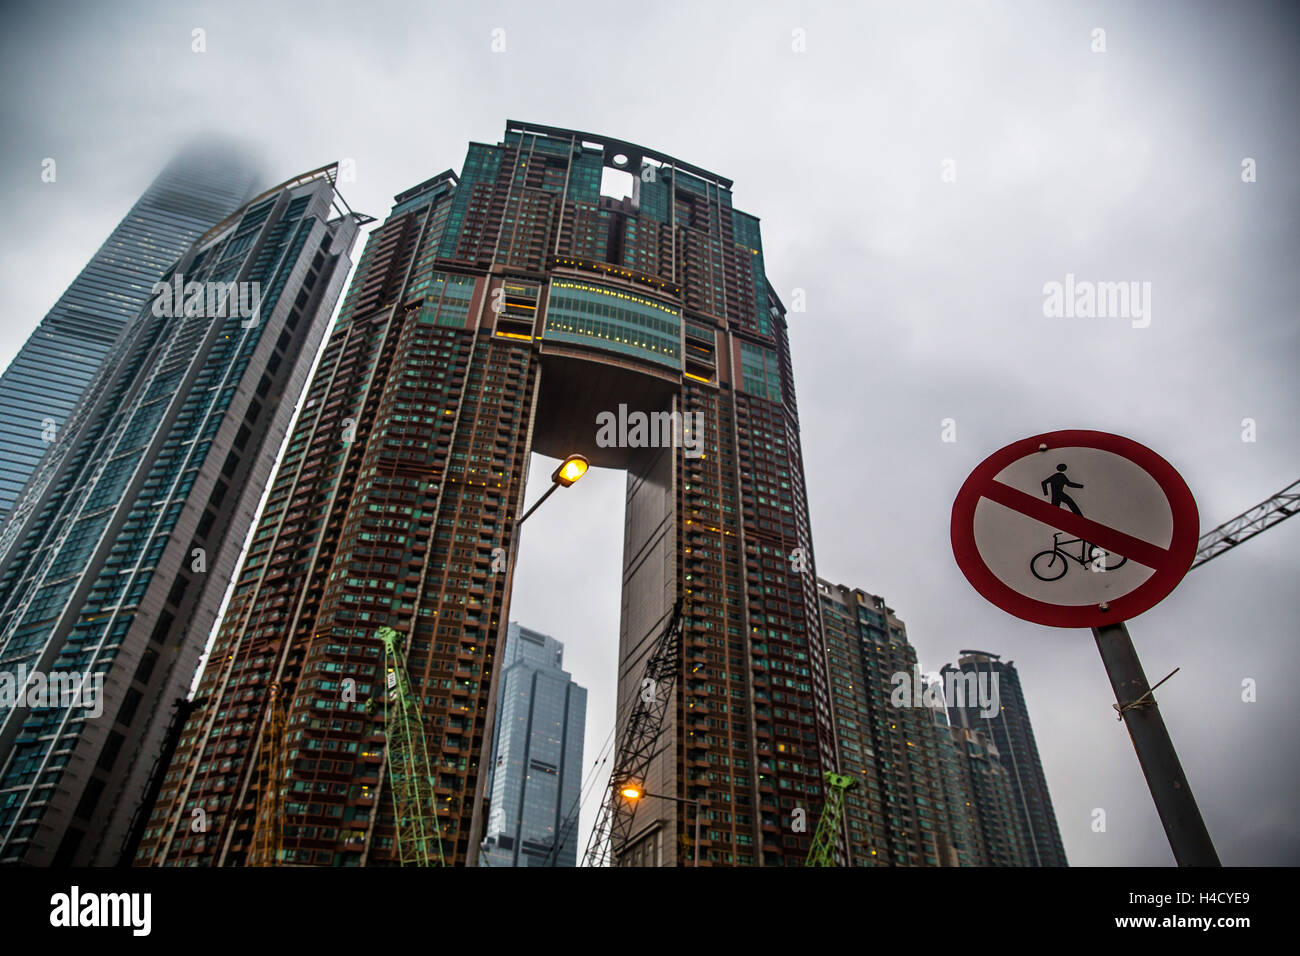 Asia, China, Hong Kong, Elements, road sign Stock Photo